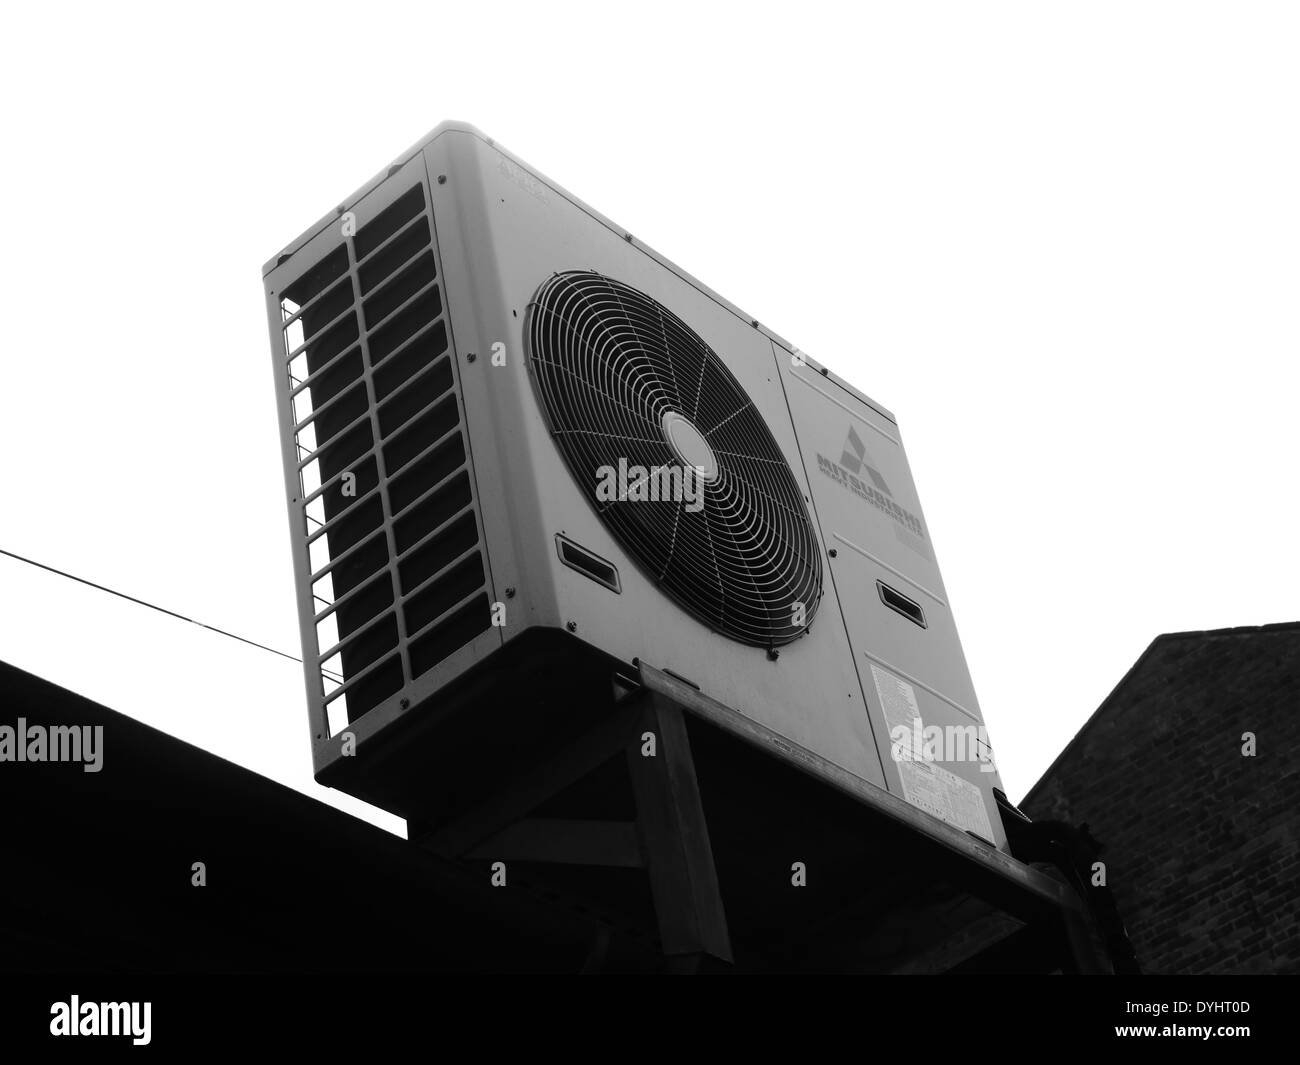 Image Monochrome - Urban street scène montrant la ventilation / ventilateur extracteur d'alimentation, Newcastle upon Tyne, Angleterre Banque D'Images